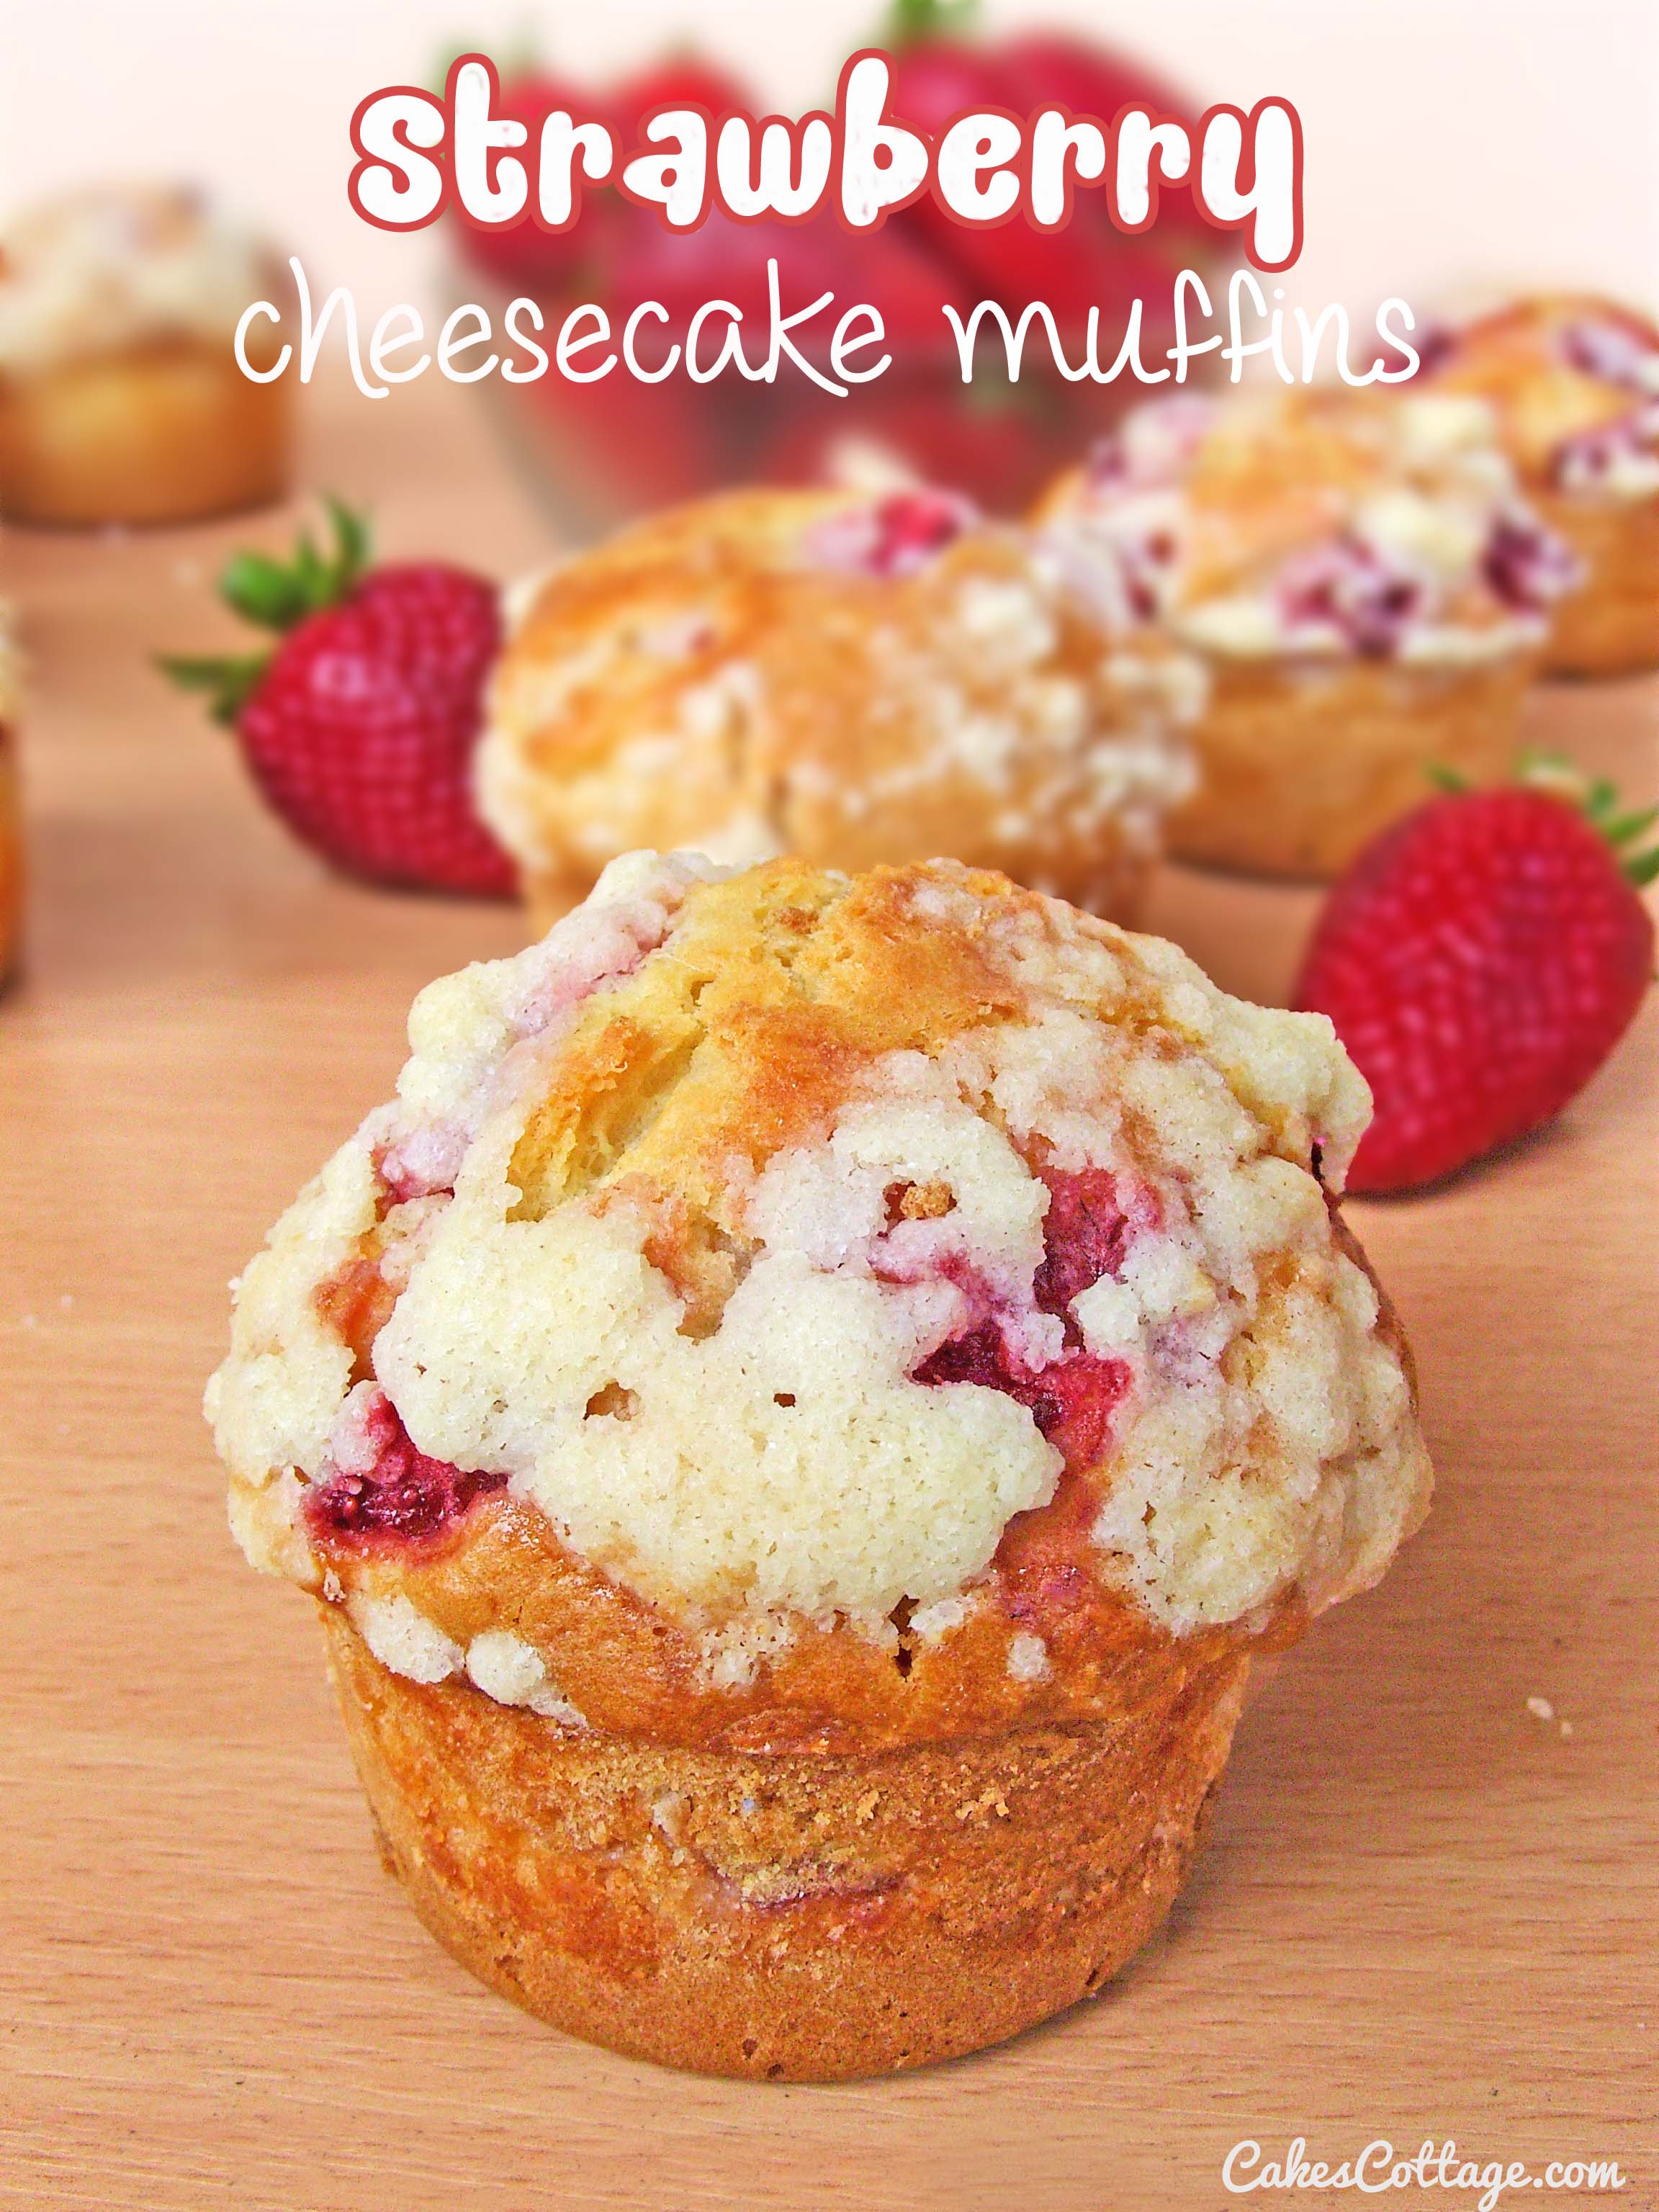 Strawberry Cheesecake Muffins - Cakescottage